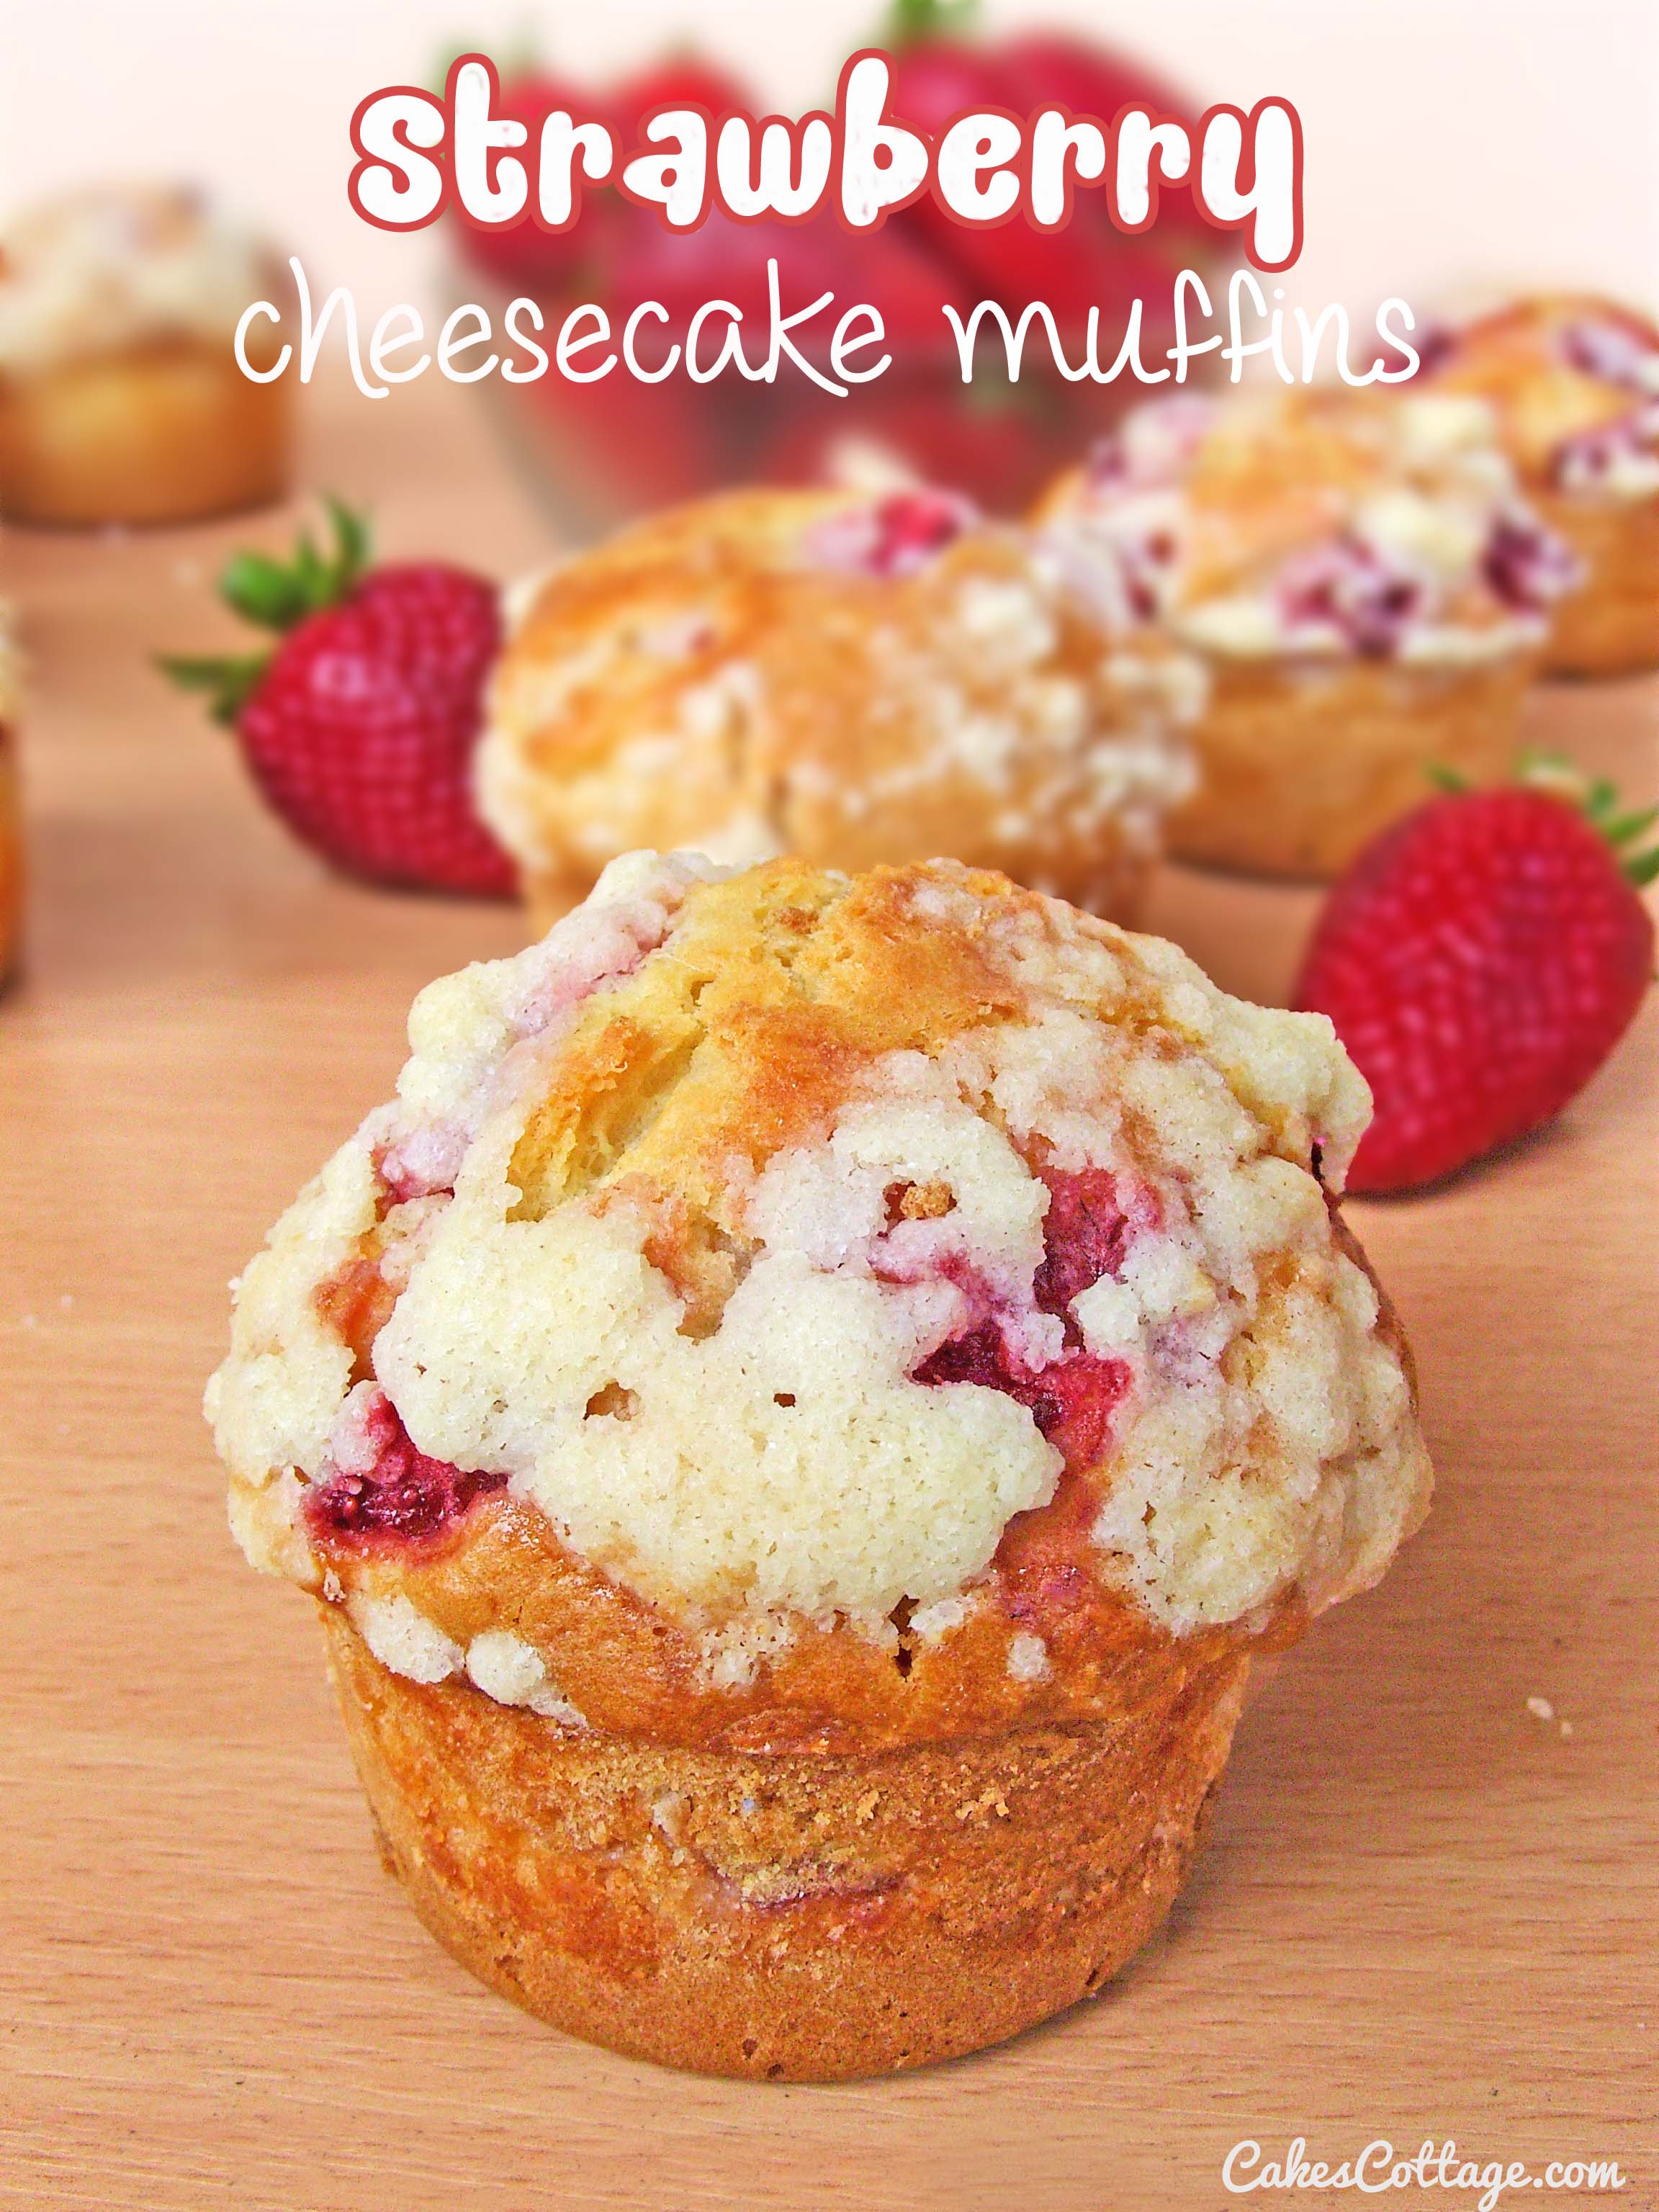 Strawberry Cheesecake Muffins - Cakescottage